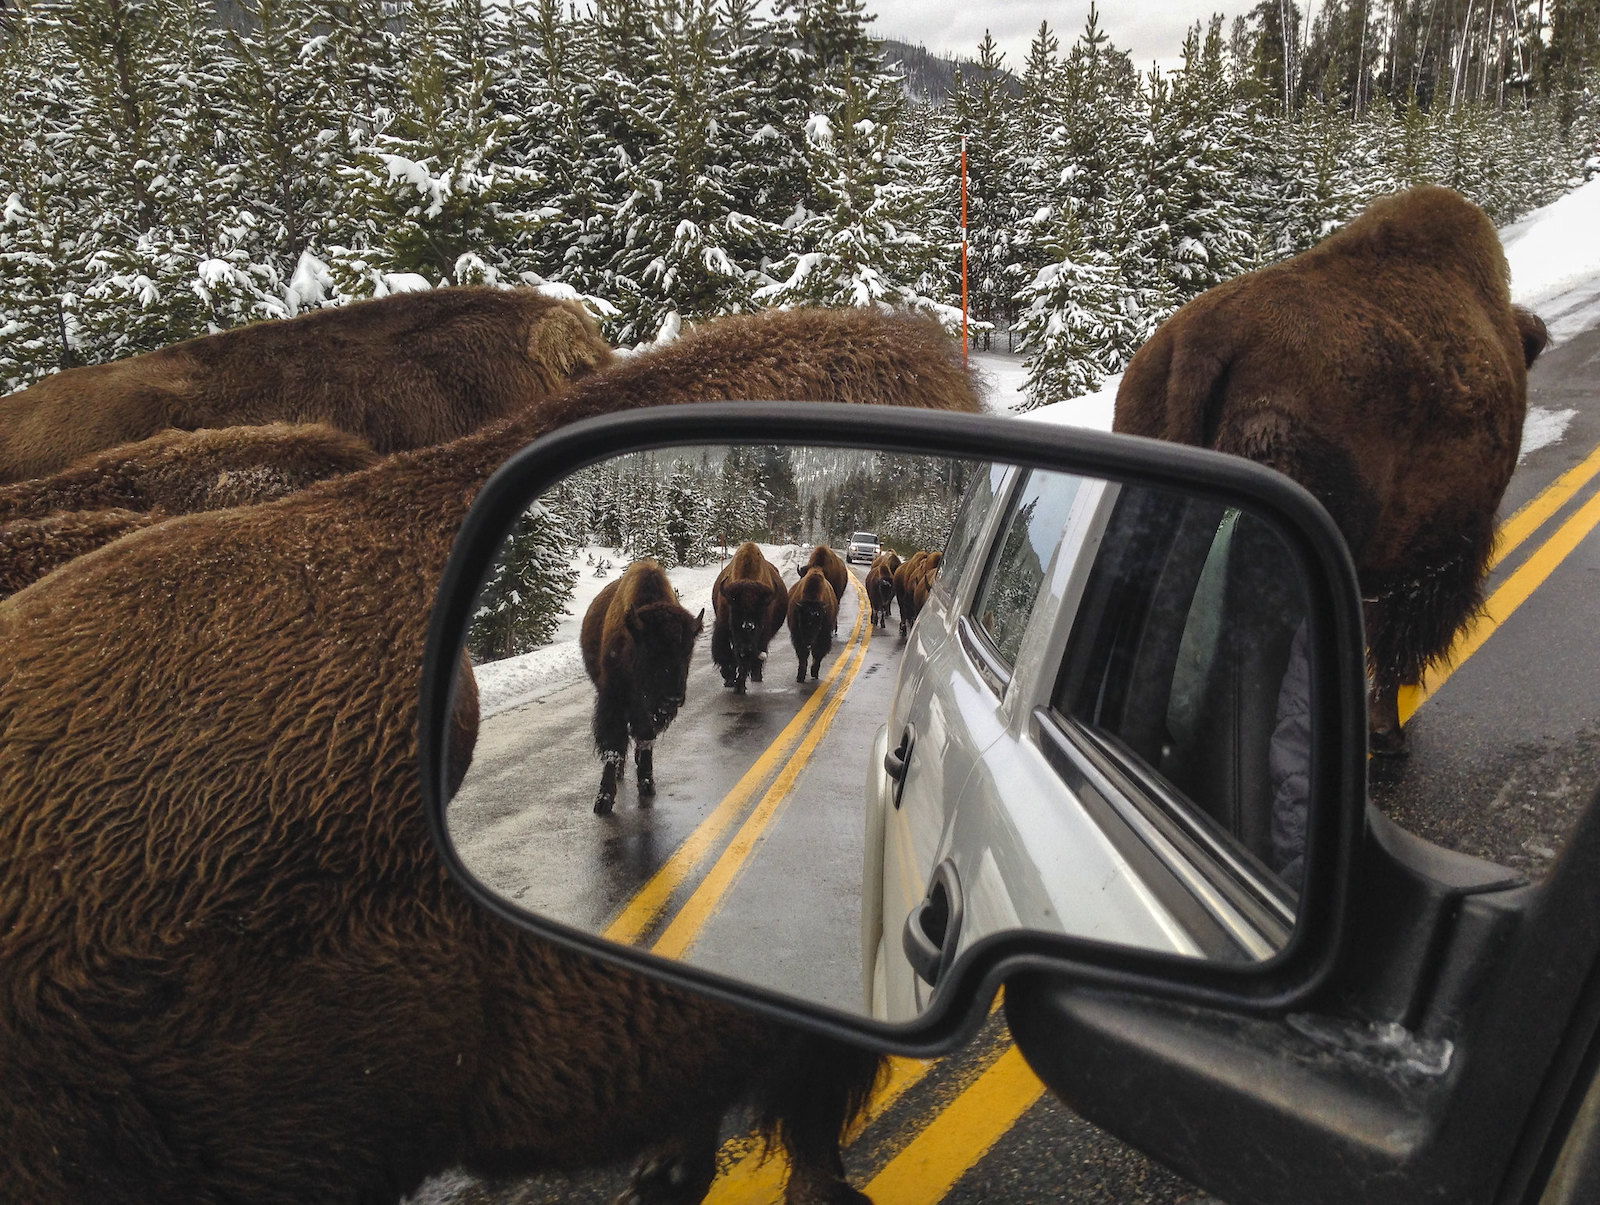 bison walk near a car as seen in a rear view mirror